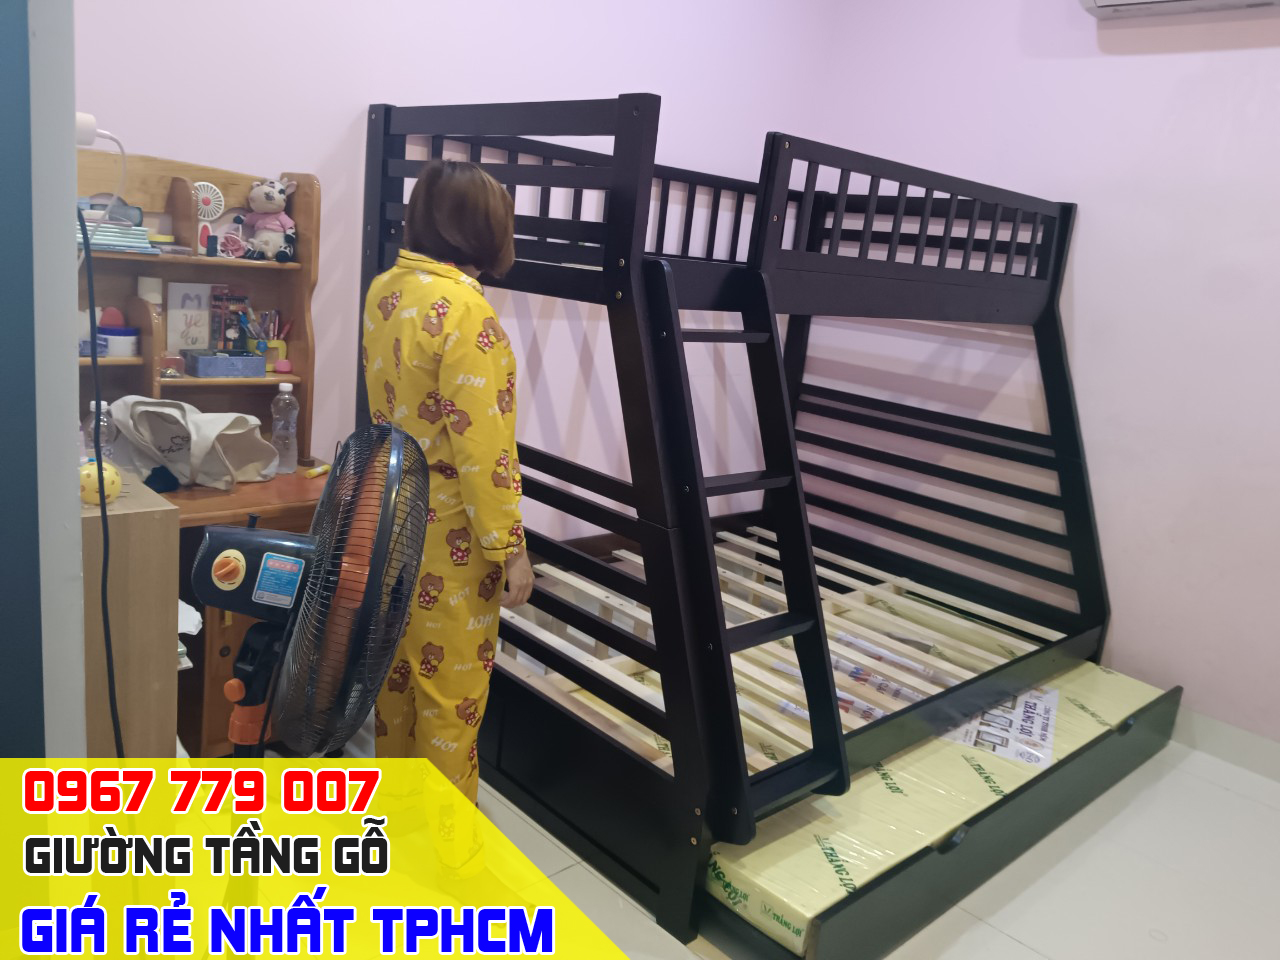 CH bán giường tầng trẻ em giá rẻ uy tín nhất Quận Gò Vấp TPHCM 3